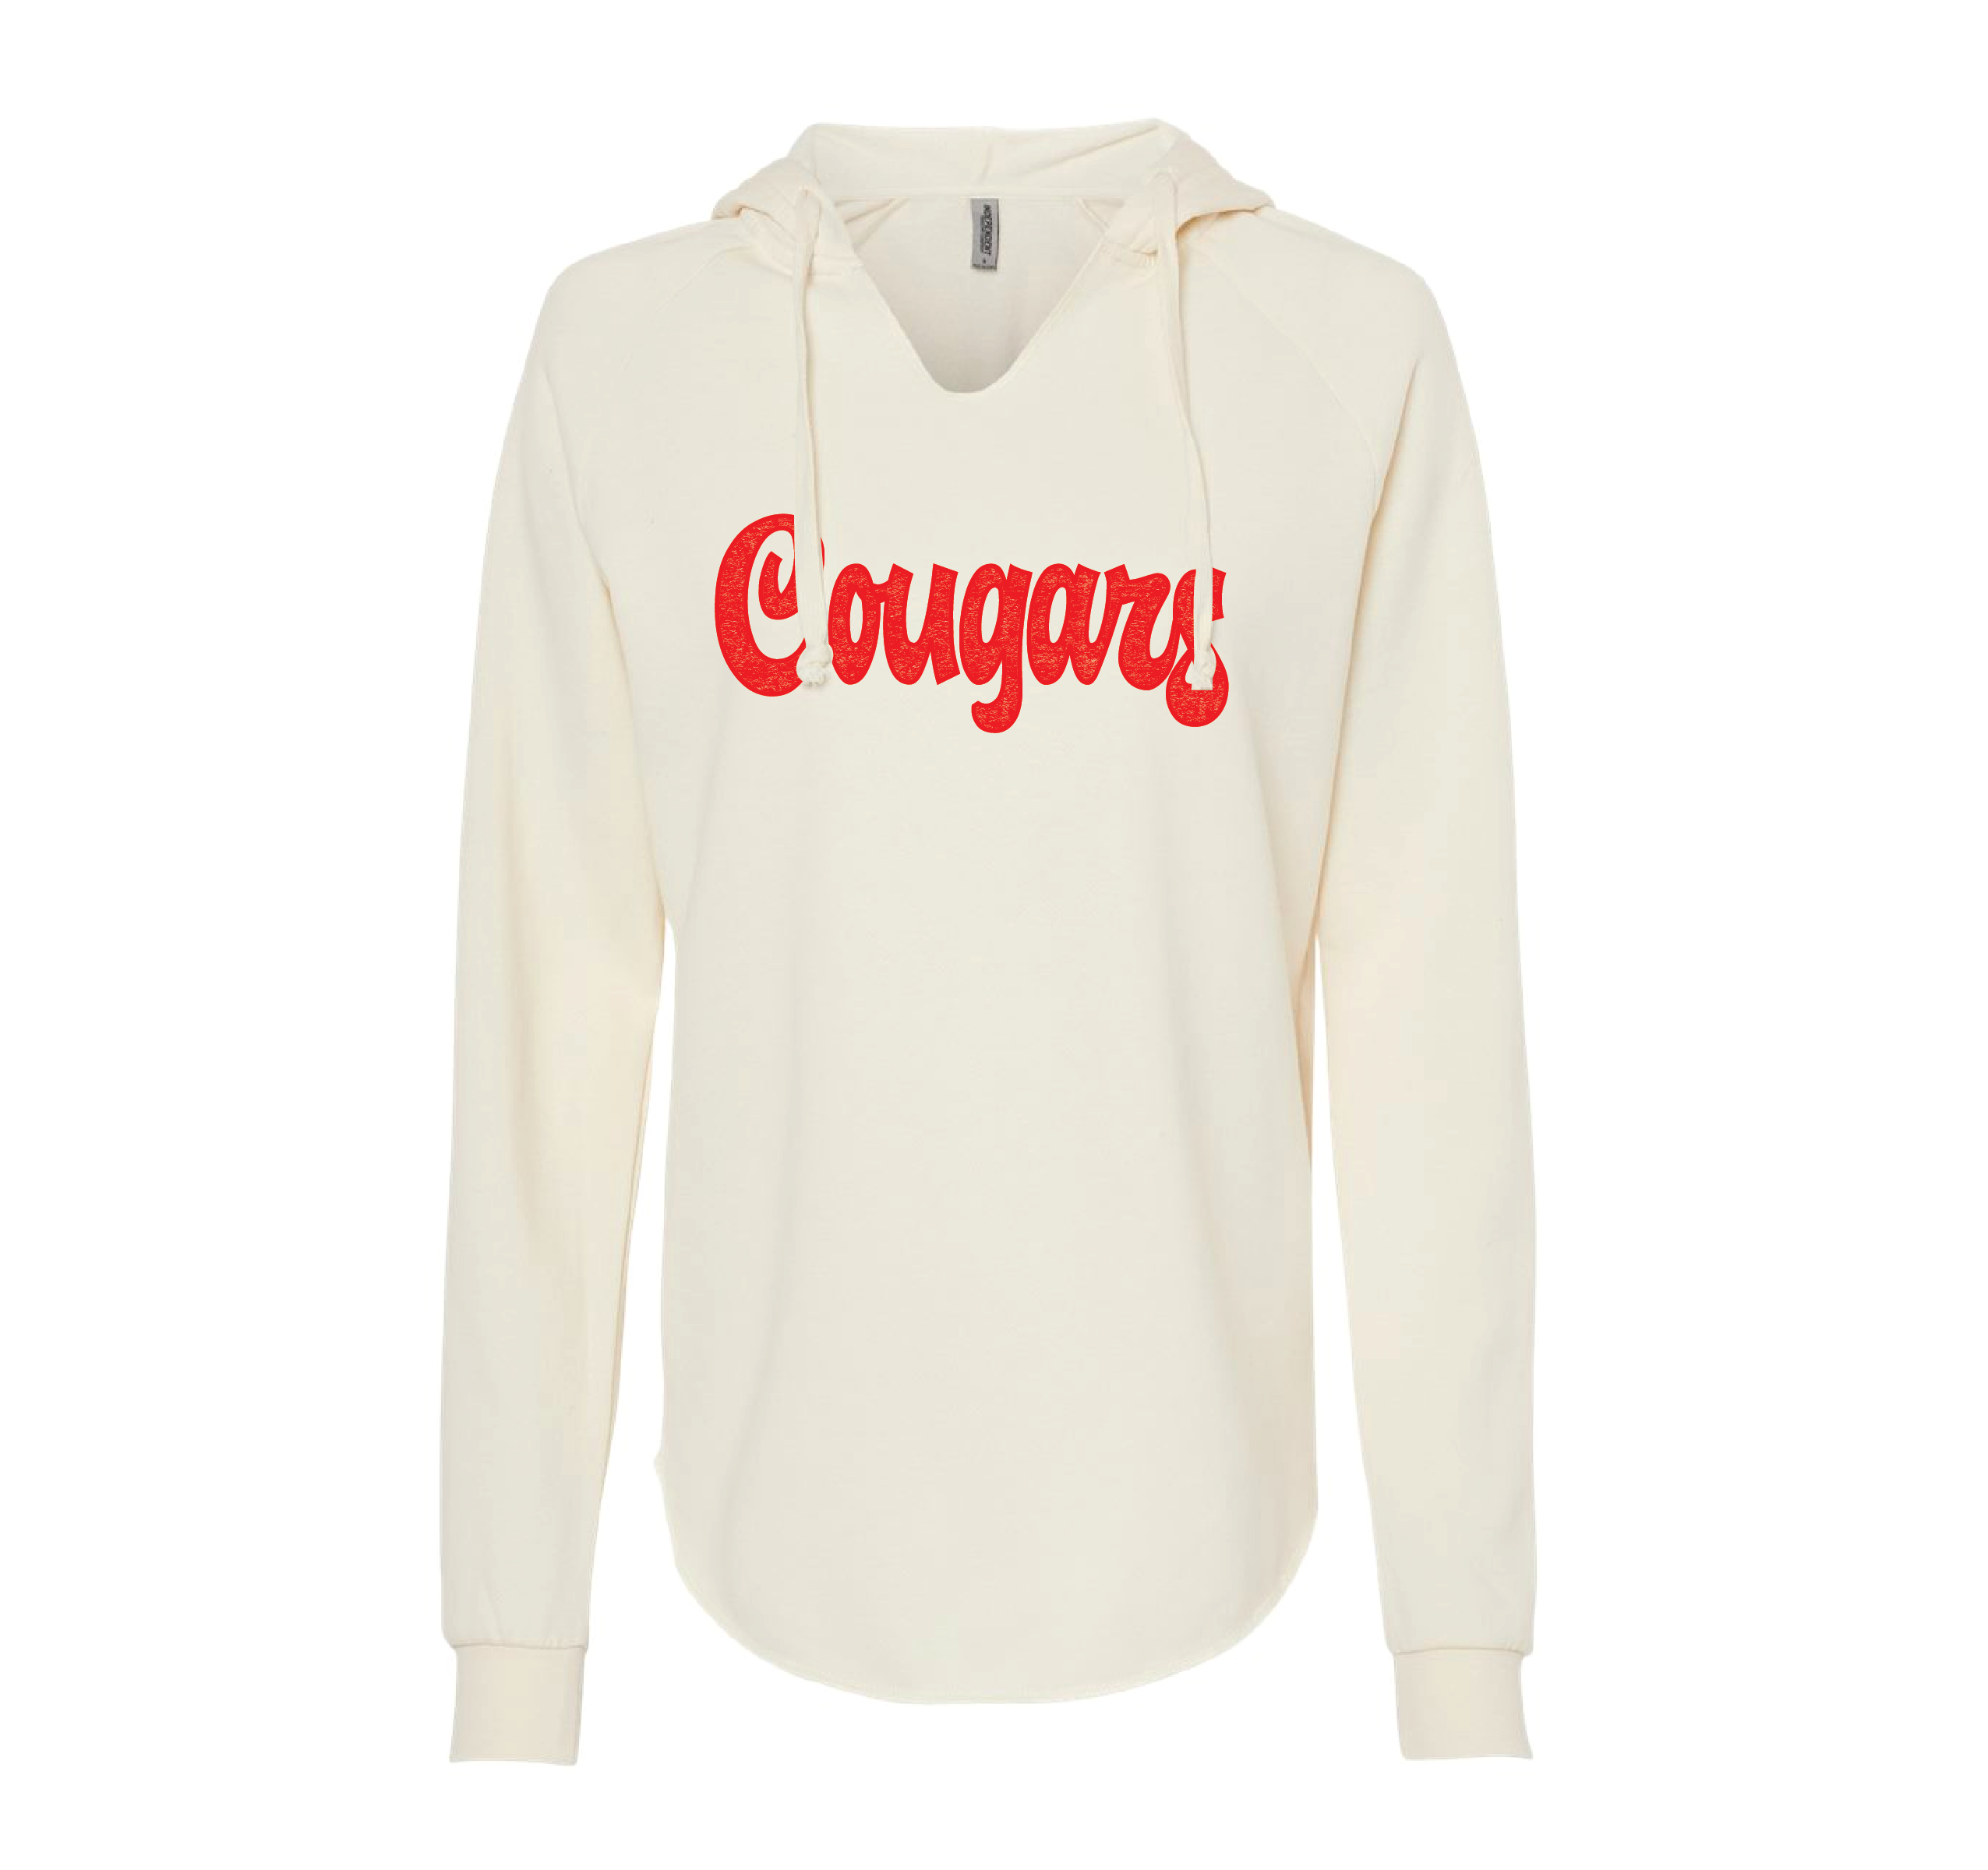 Cursive Cougars Ladies Hooded Sweatshirt